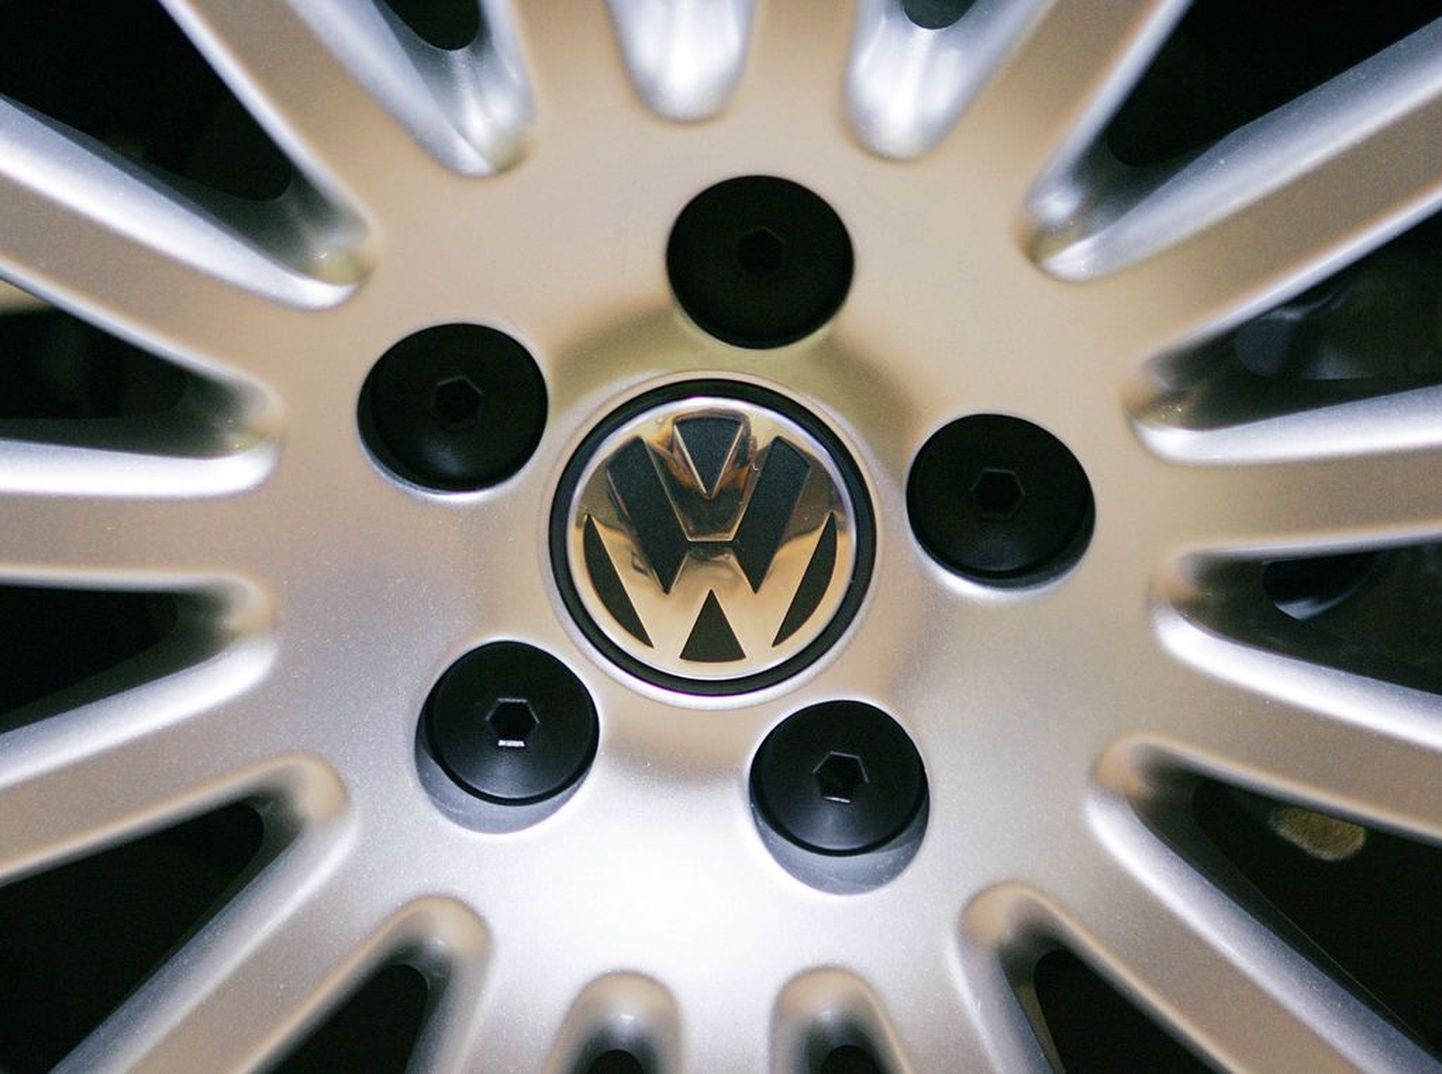 Эмблема Volkswagen. Иллюстративное фото